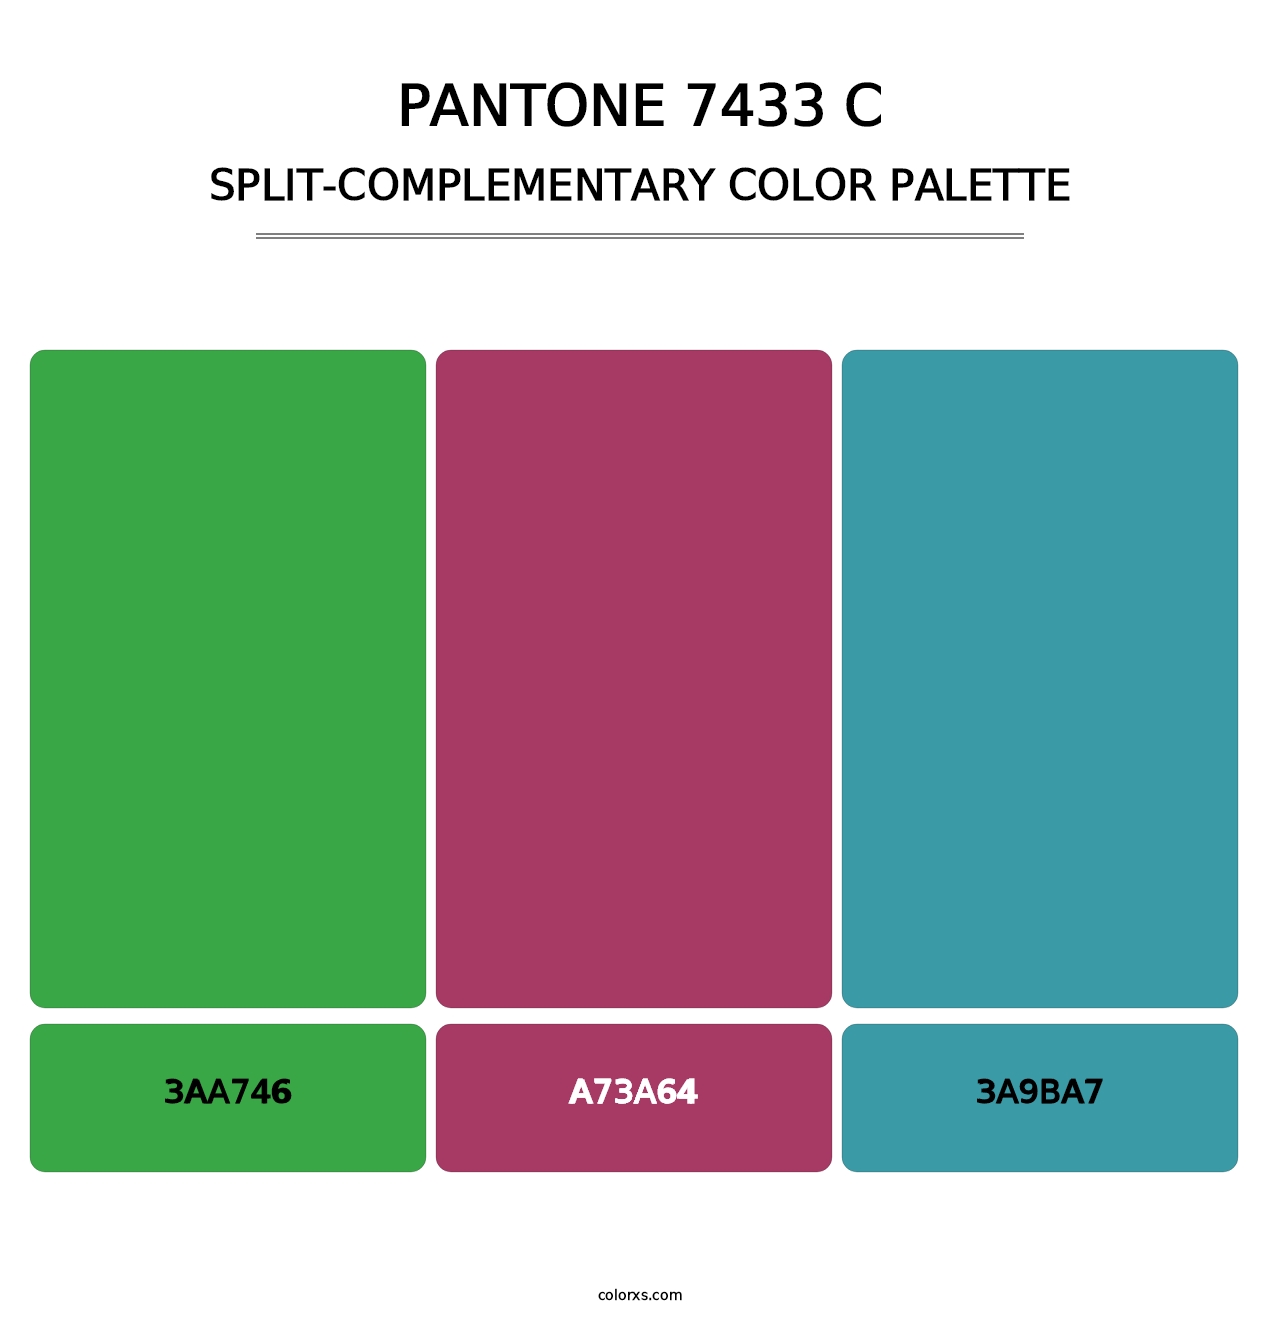 PANTONE 7433 C - Split-Complementary Color Palette